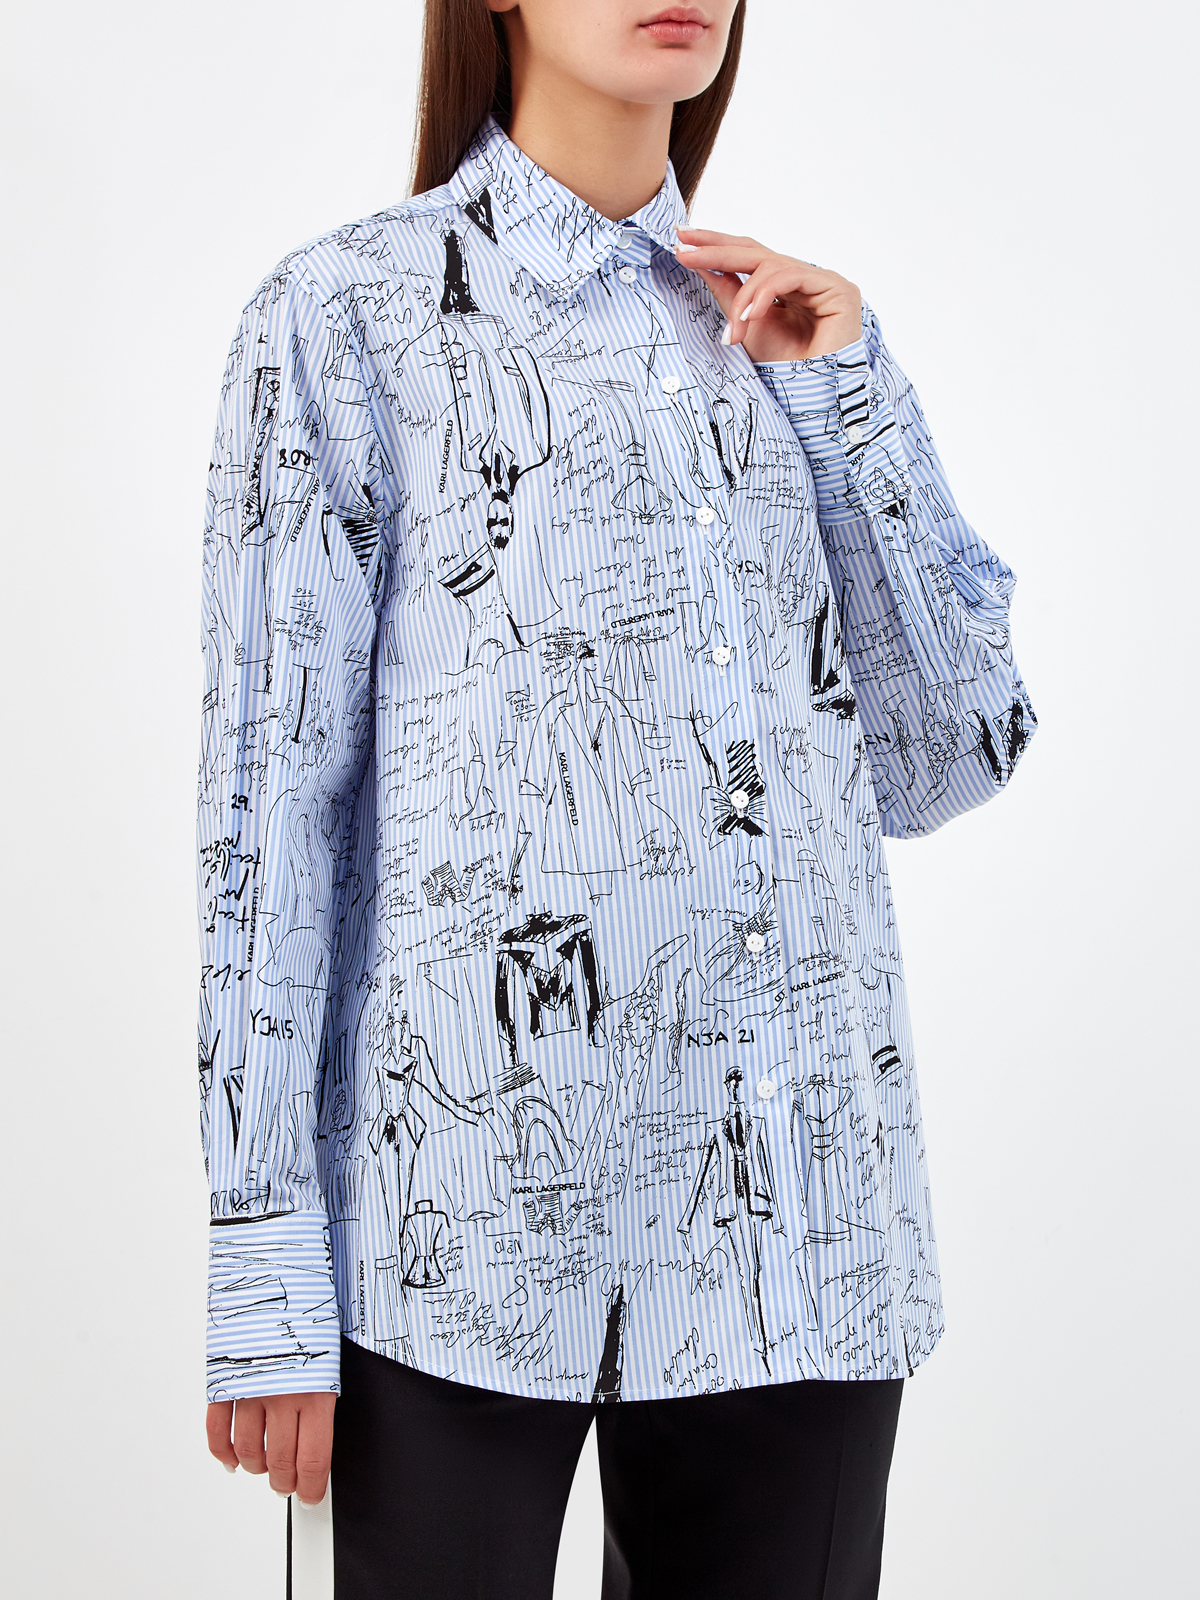 Рубашка с принтованными эскизами из коллекции Ultimate Icon KARL LAGERFELD, цвет голубой, размер S;M;L - фото 3